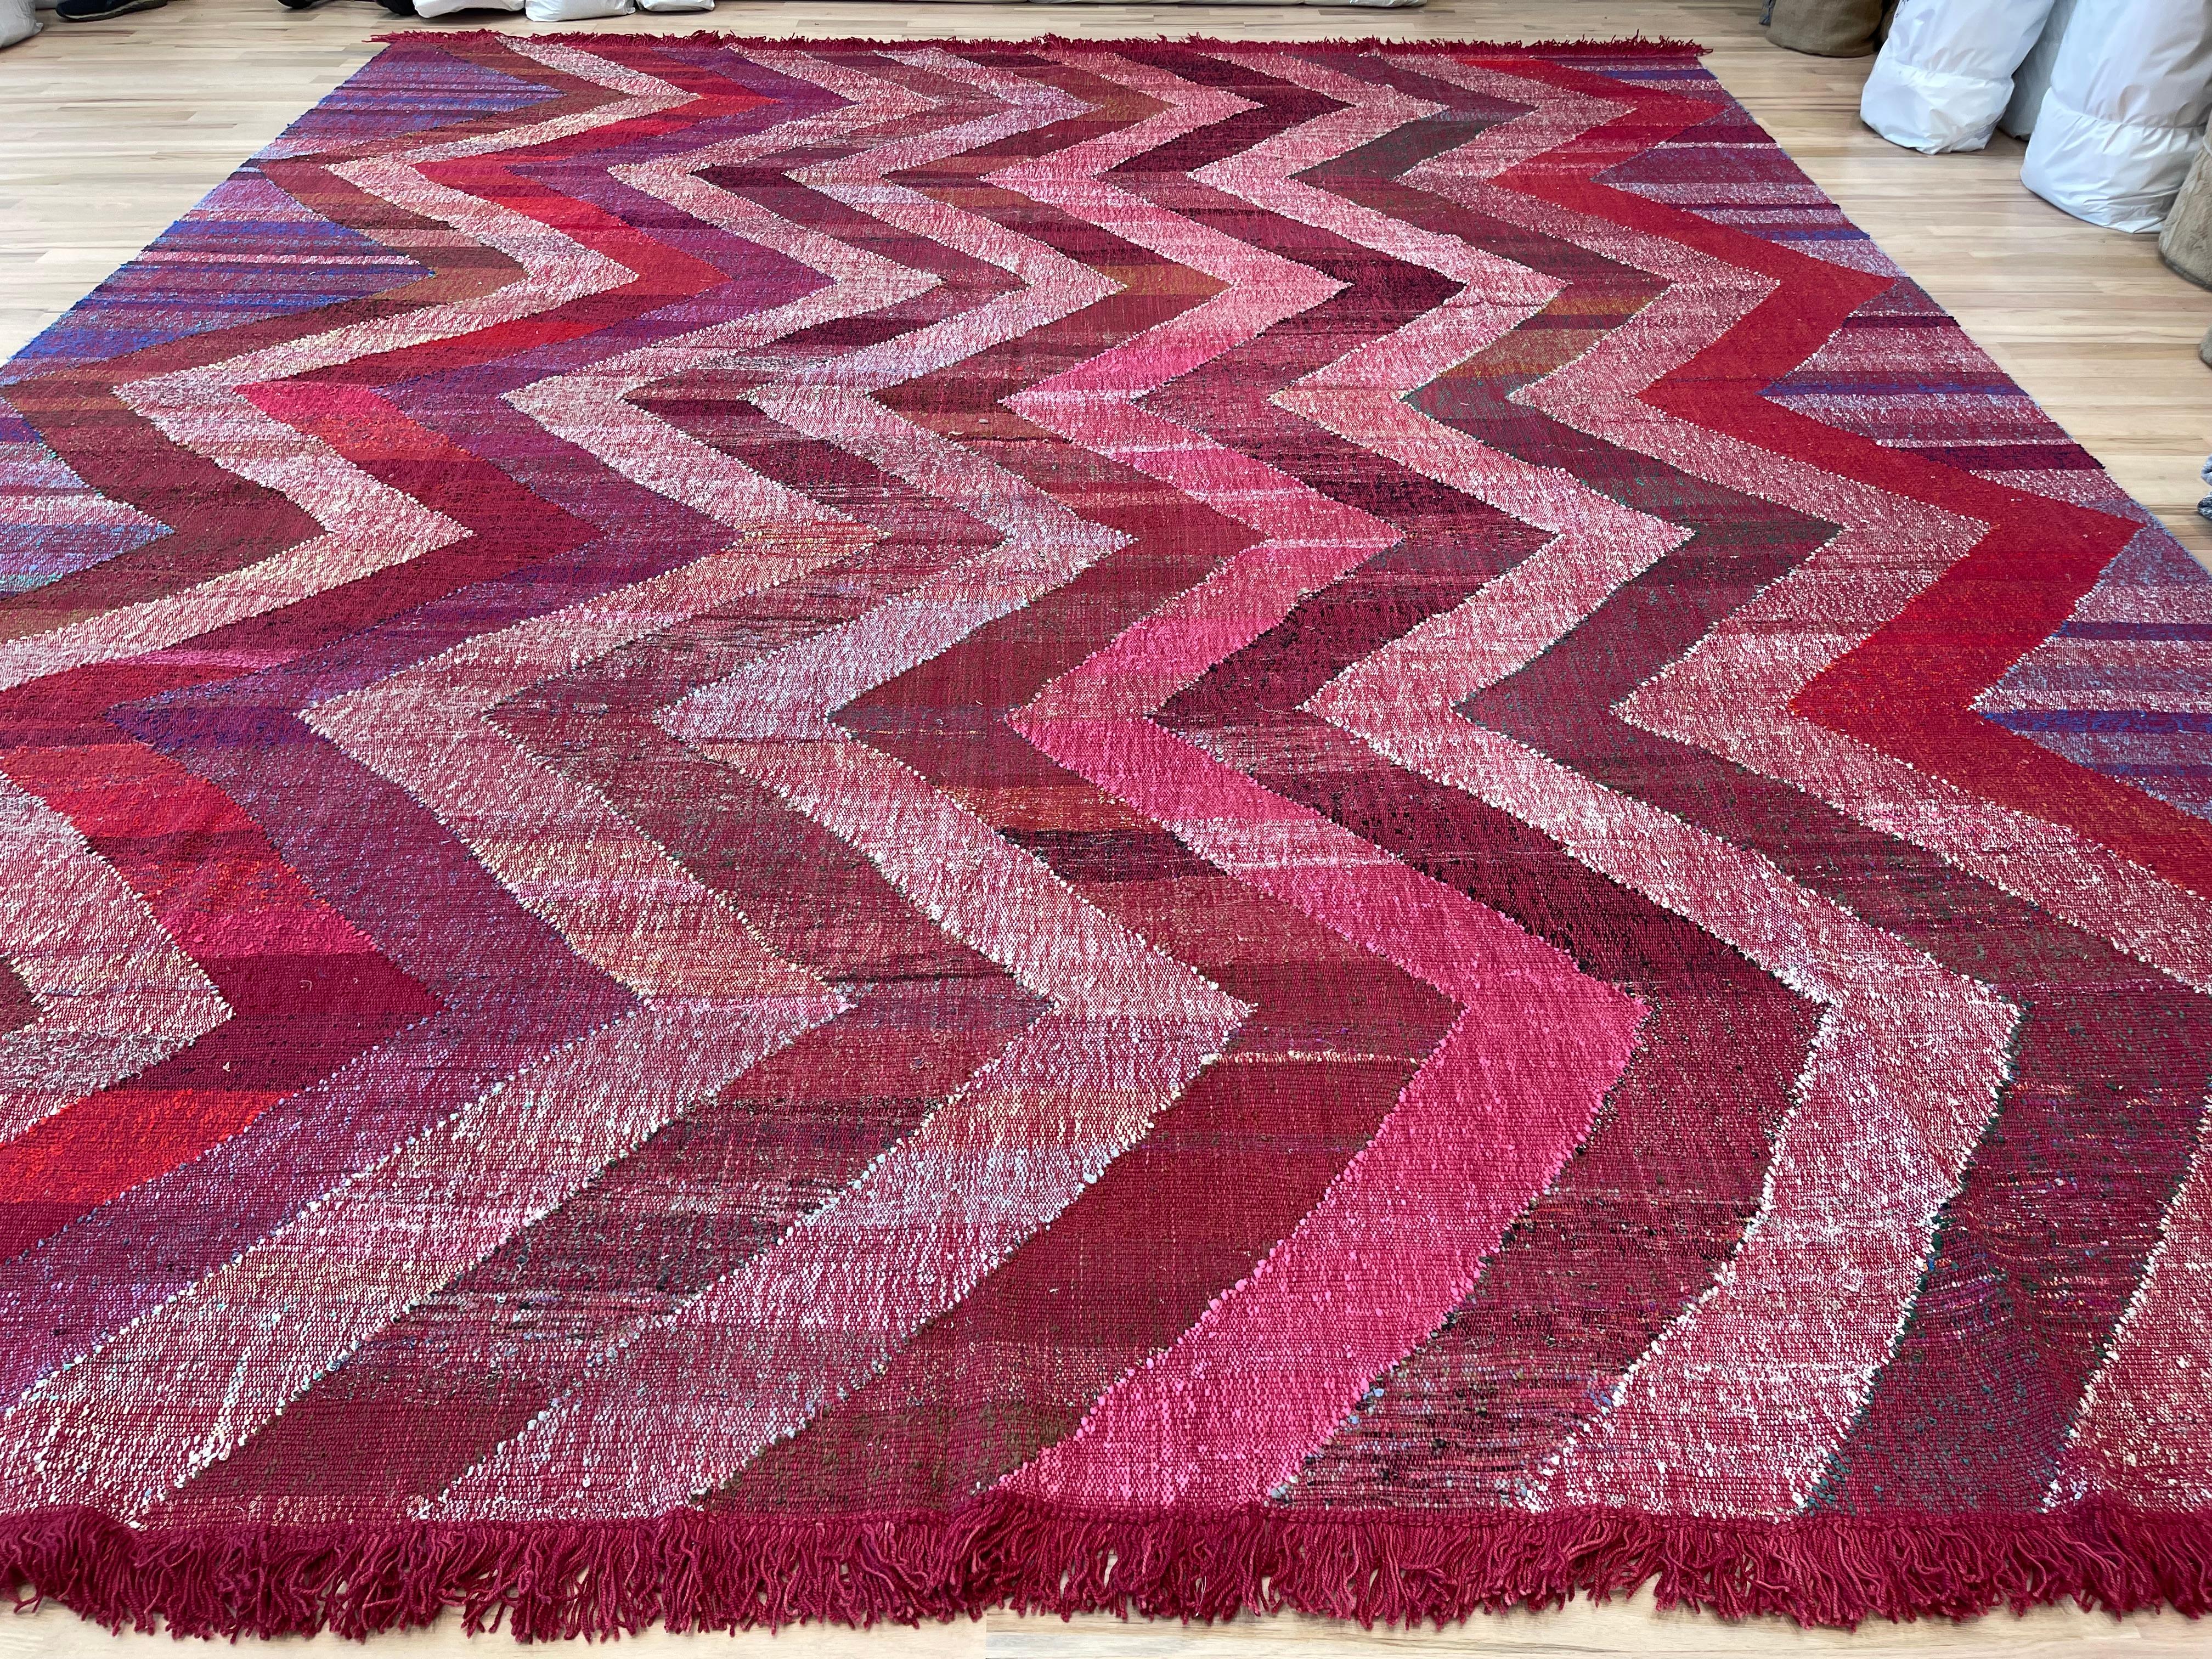 Dieser türkische Teppich zeigt ein farbenfrohes geometrisches Muster  so dass Sie Ihr Dekor wechseln können. Verleihen Sie jedem Raum einen Hauch von Stil und haben Sie gleichzeitig die Möglichkeit, die Dinge nach Lust und Laune zu verändern. Dieser